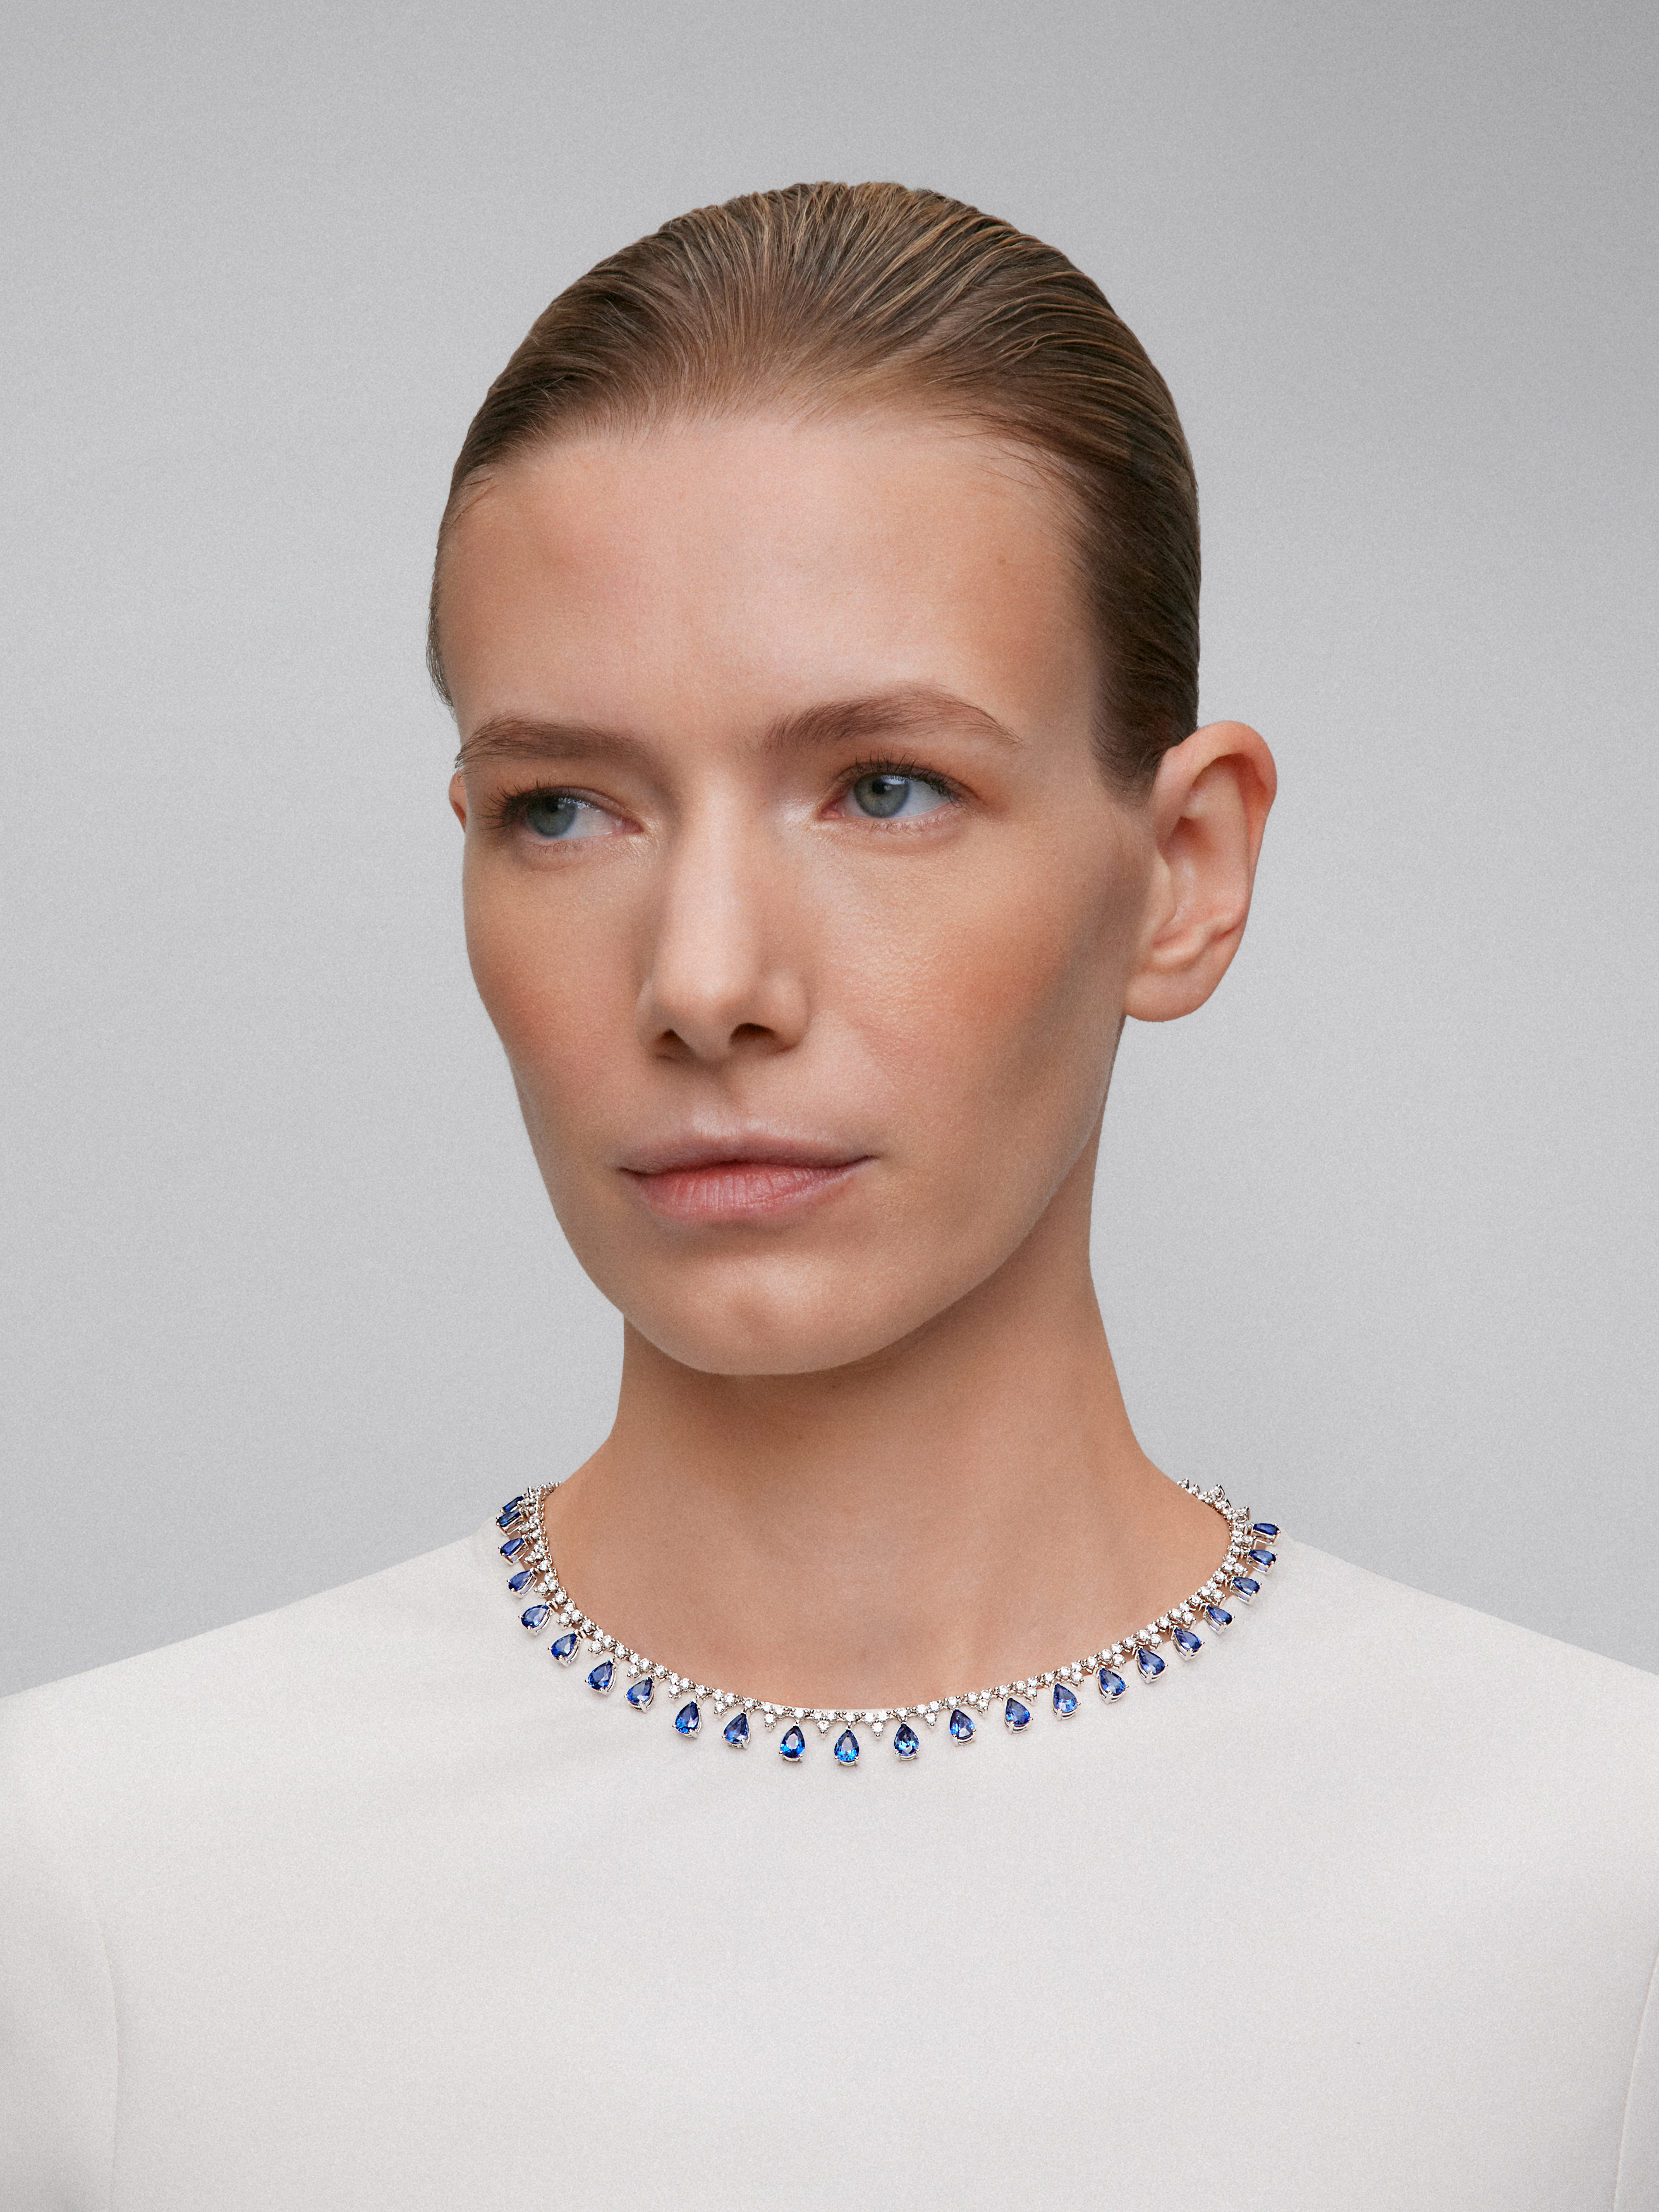 Collar rivière de oro blanco de 18K con zafiros azules en talla pera de 16,62 cts y diamantes blancos en talla brillante de 8,84 cts